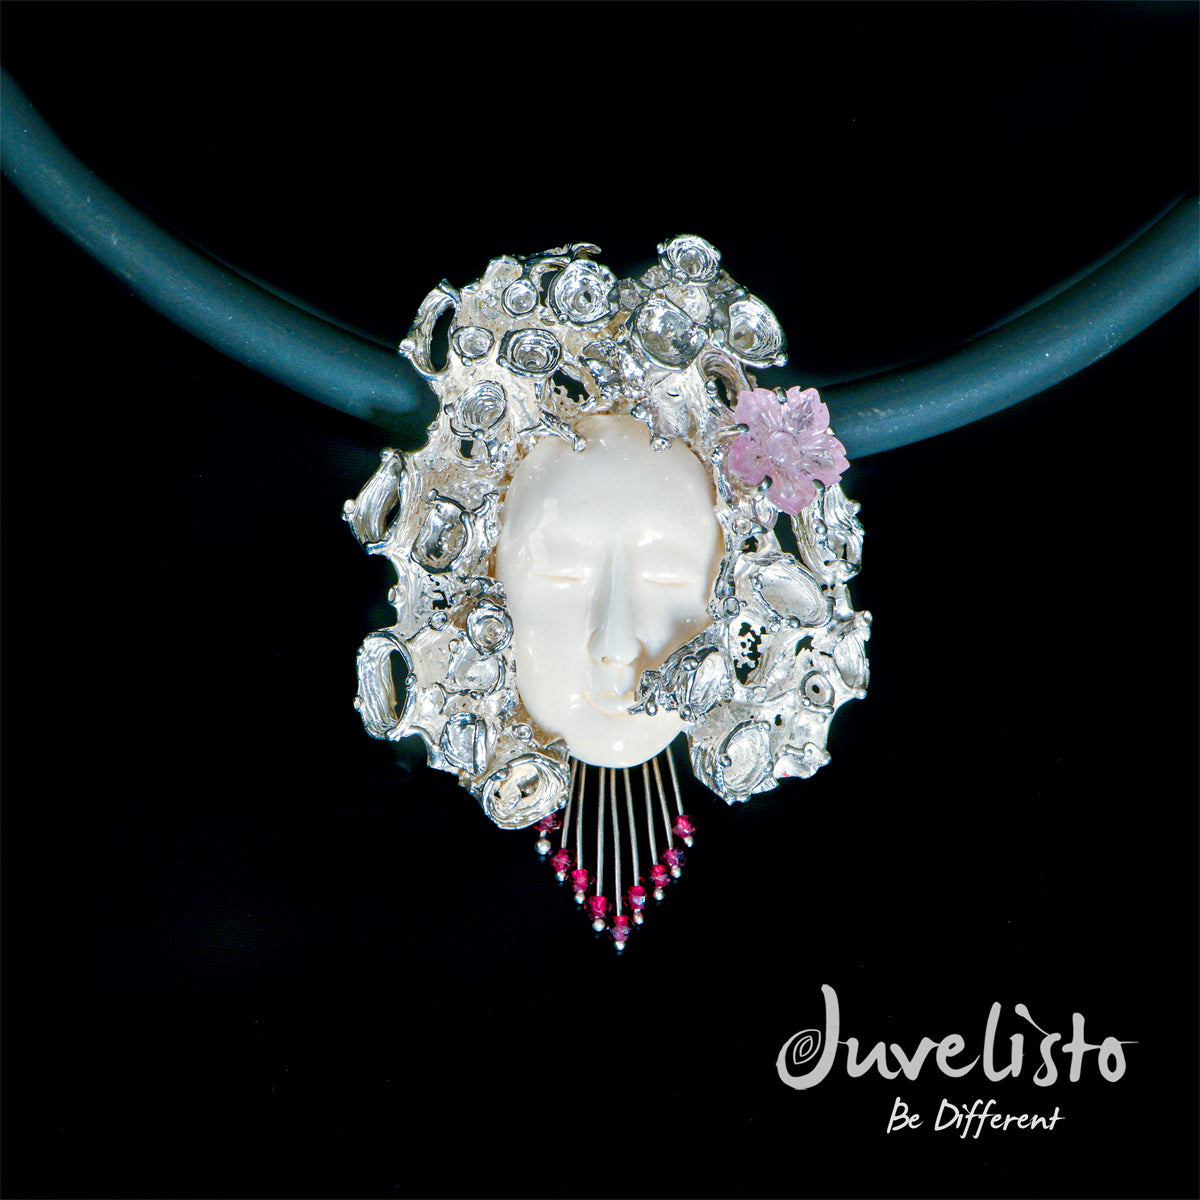 Juvelisto Design  Carved Face Pendant Sterling Silver Hair with Rose Quartz Flower &amp; Garnets